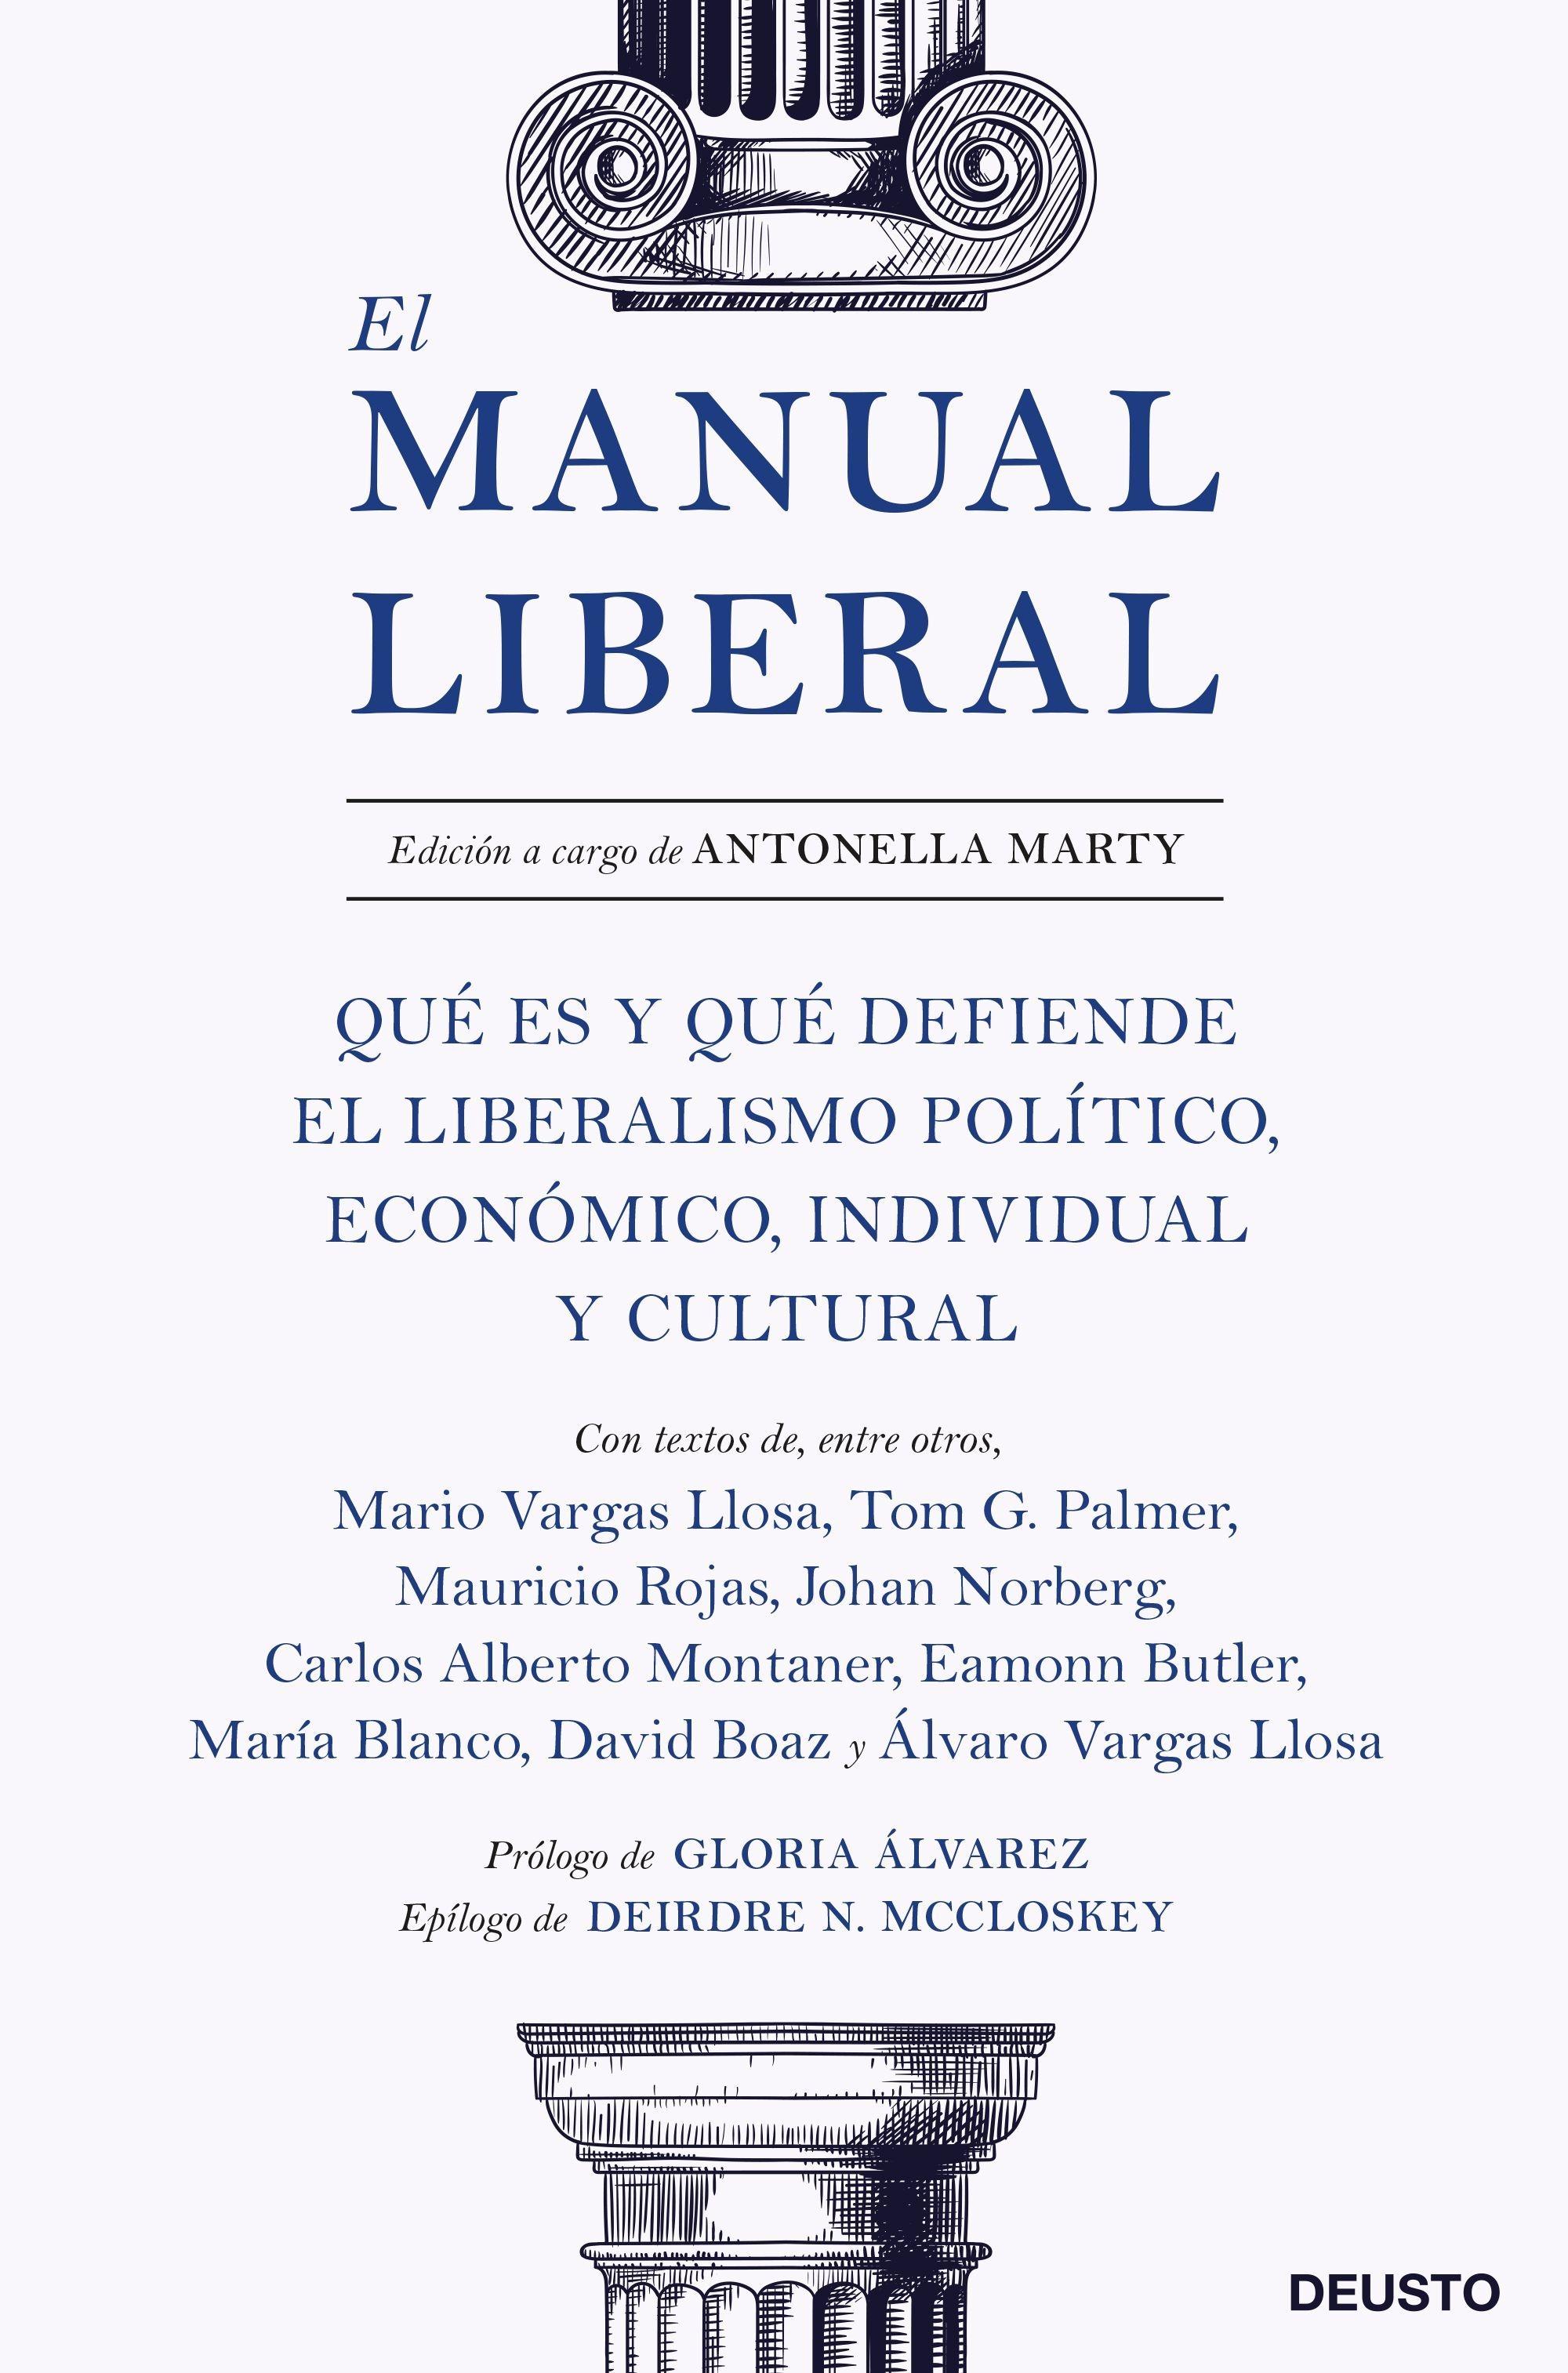 El manual liberal "Qué es y qué defiende el liberalismo político, económico, individual y c"